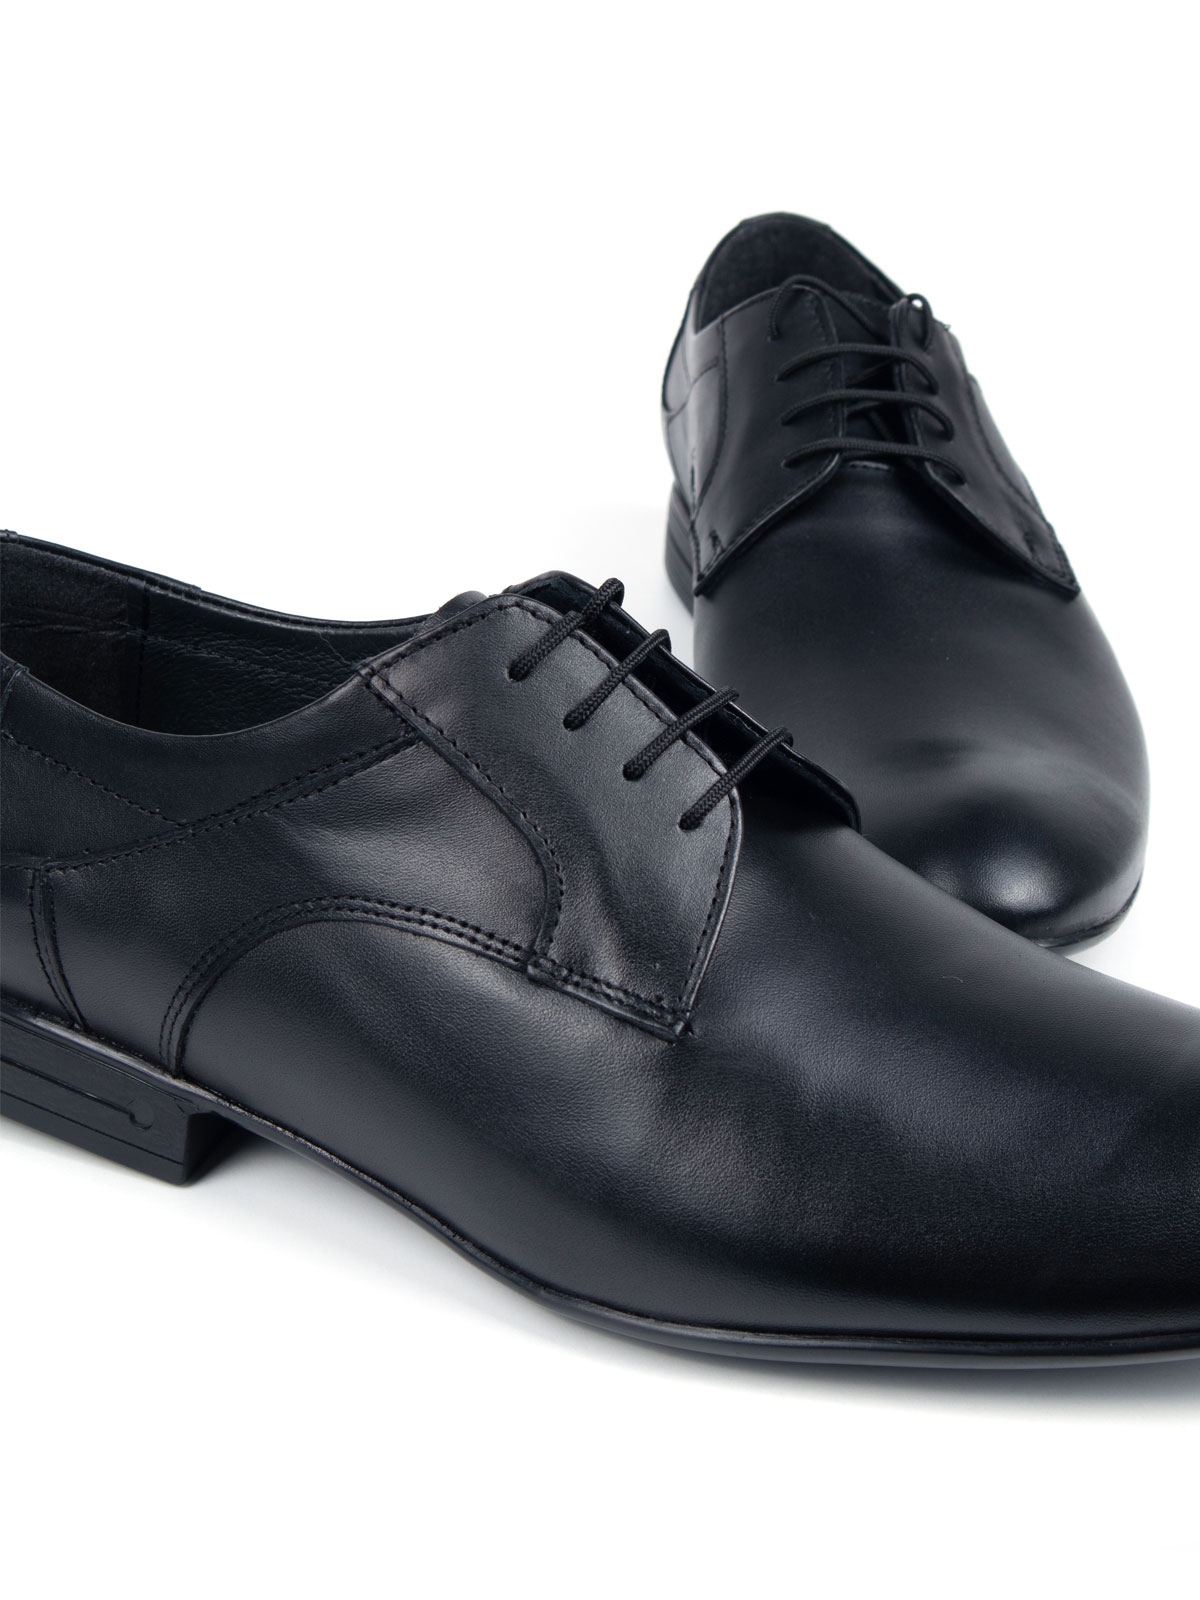  μαύρα κομψά παπούτσια από λείο δέρμα  - 81074 - € 77.61 img1